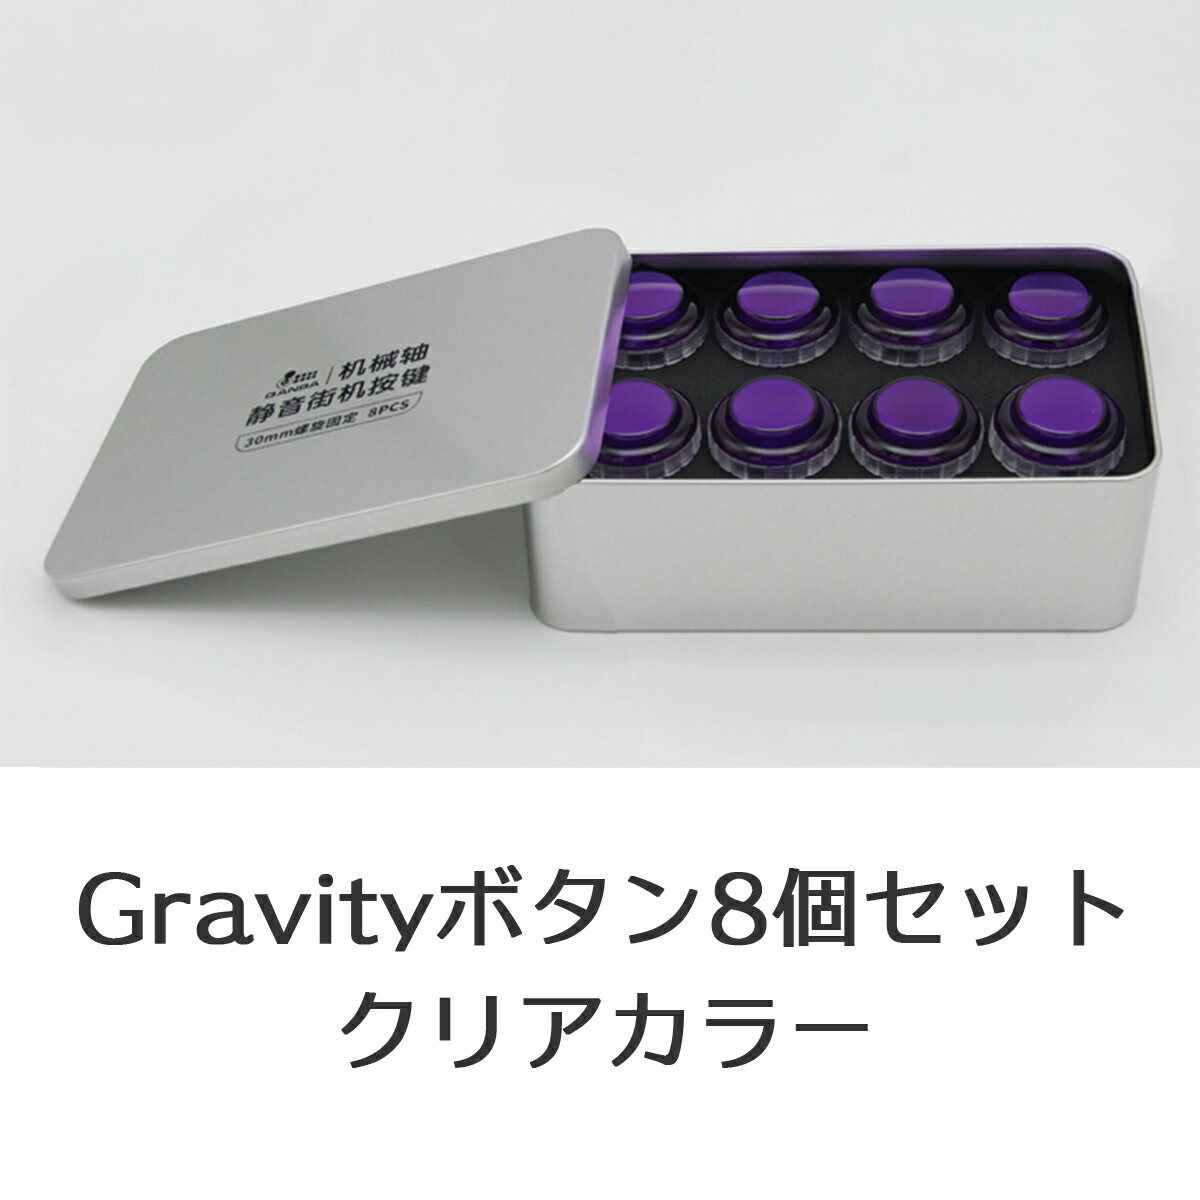 Qanba Gravity XL クァンバ グラビティ XL メカニカルスイッチ アーケード ボタン 30mm C（ビデオゲームボタンサイズ） 静粛性45dB 耐久性7000万回 アクチュエーションポイント1.5mm 押下荷重50g リニア カスタムアートワーク対応